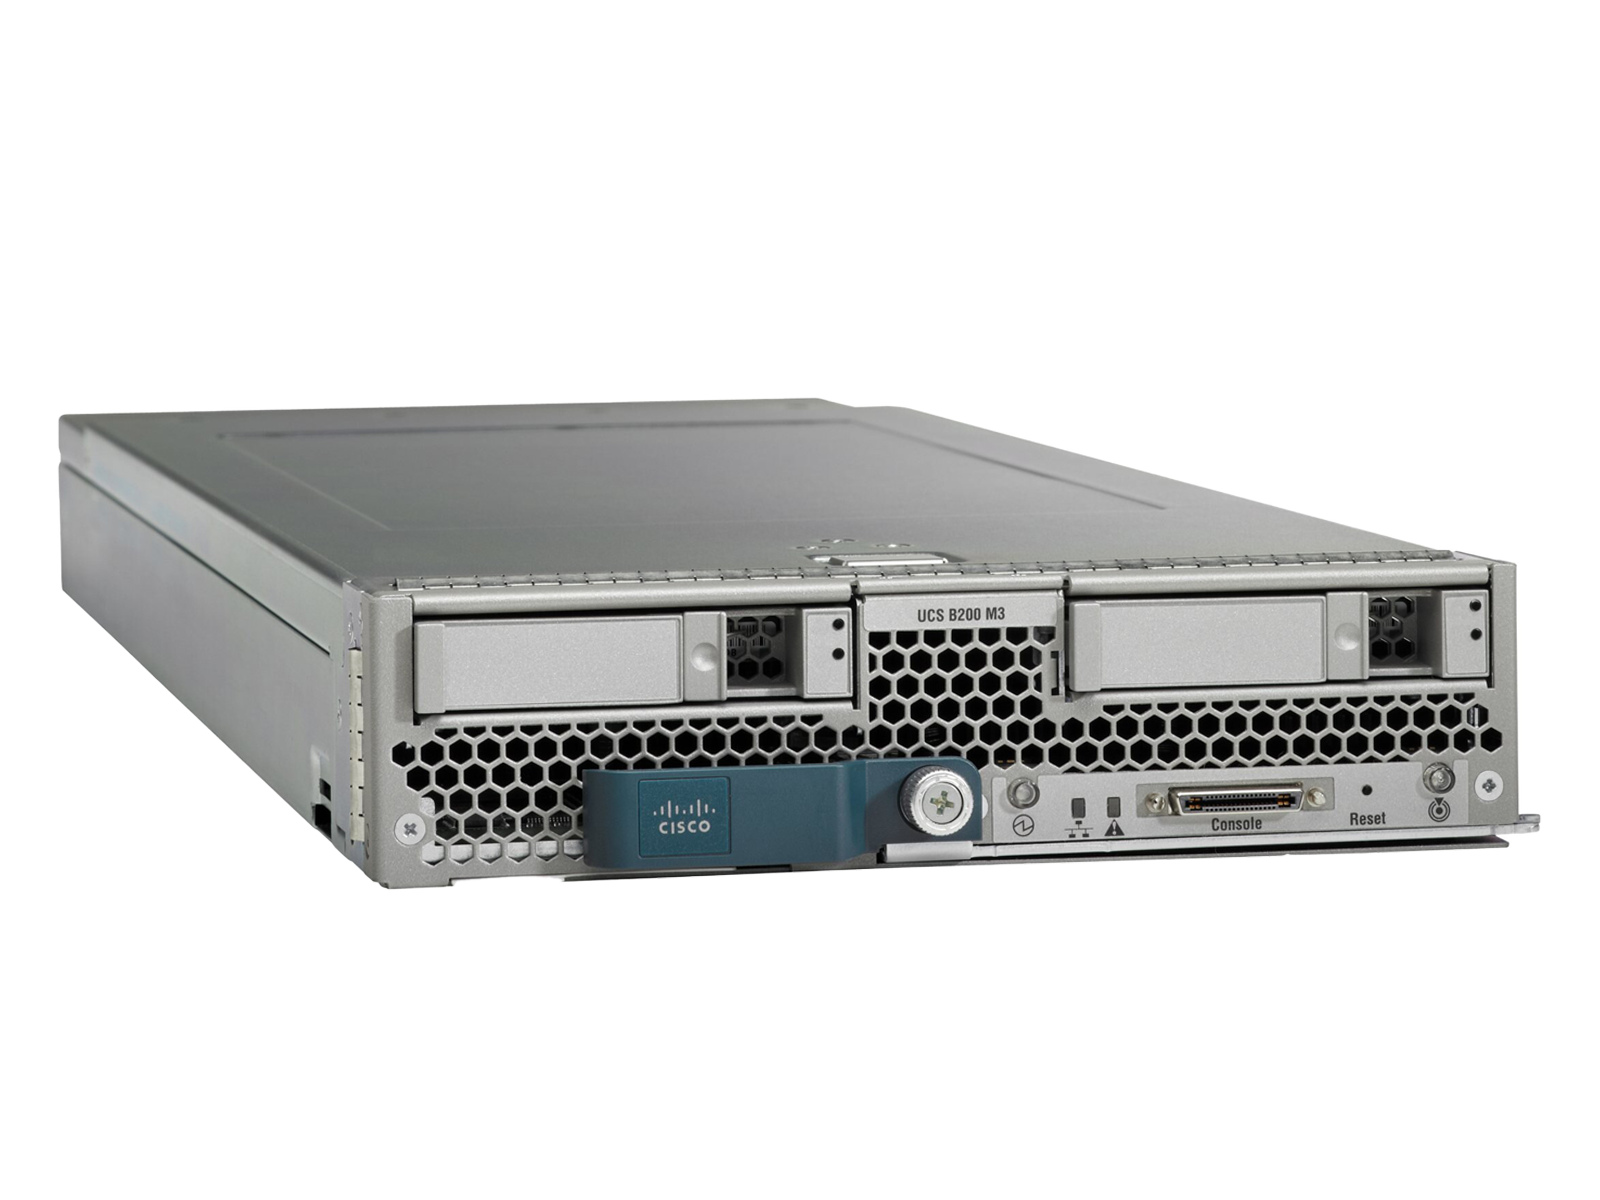 Lot of 8 Cisco B200 M3 16x E5-2670V2 3072GB 3TB Ram Blade Servers VIC1240 14900R